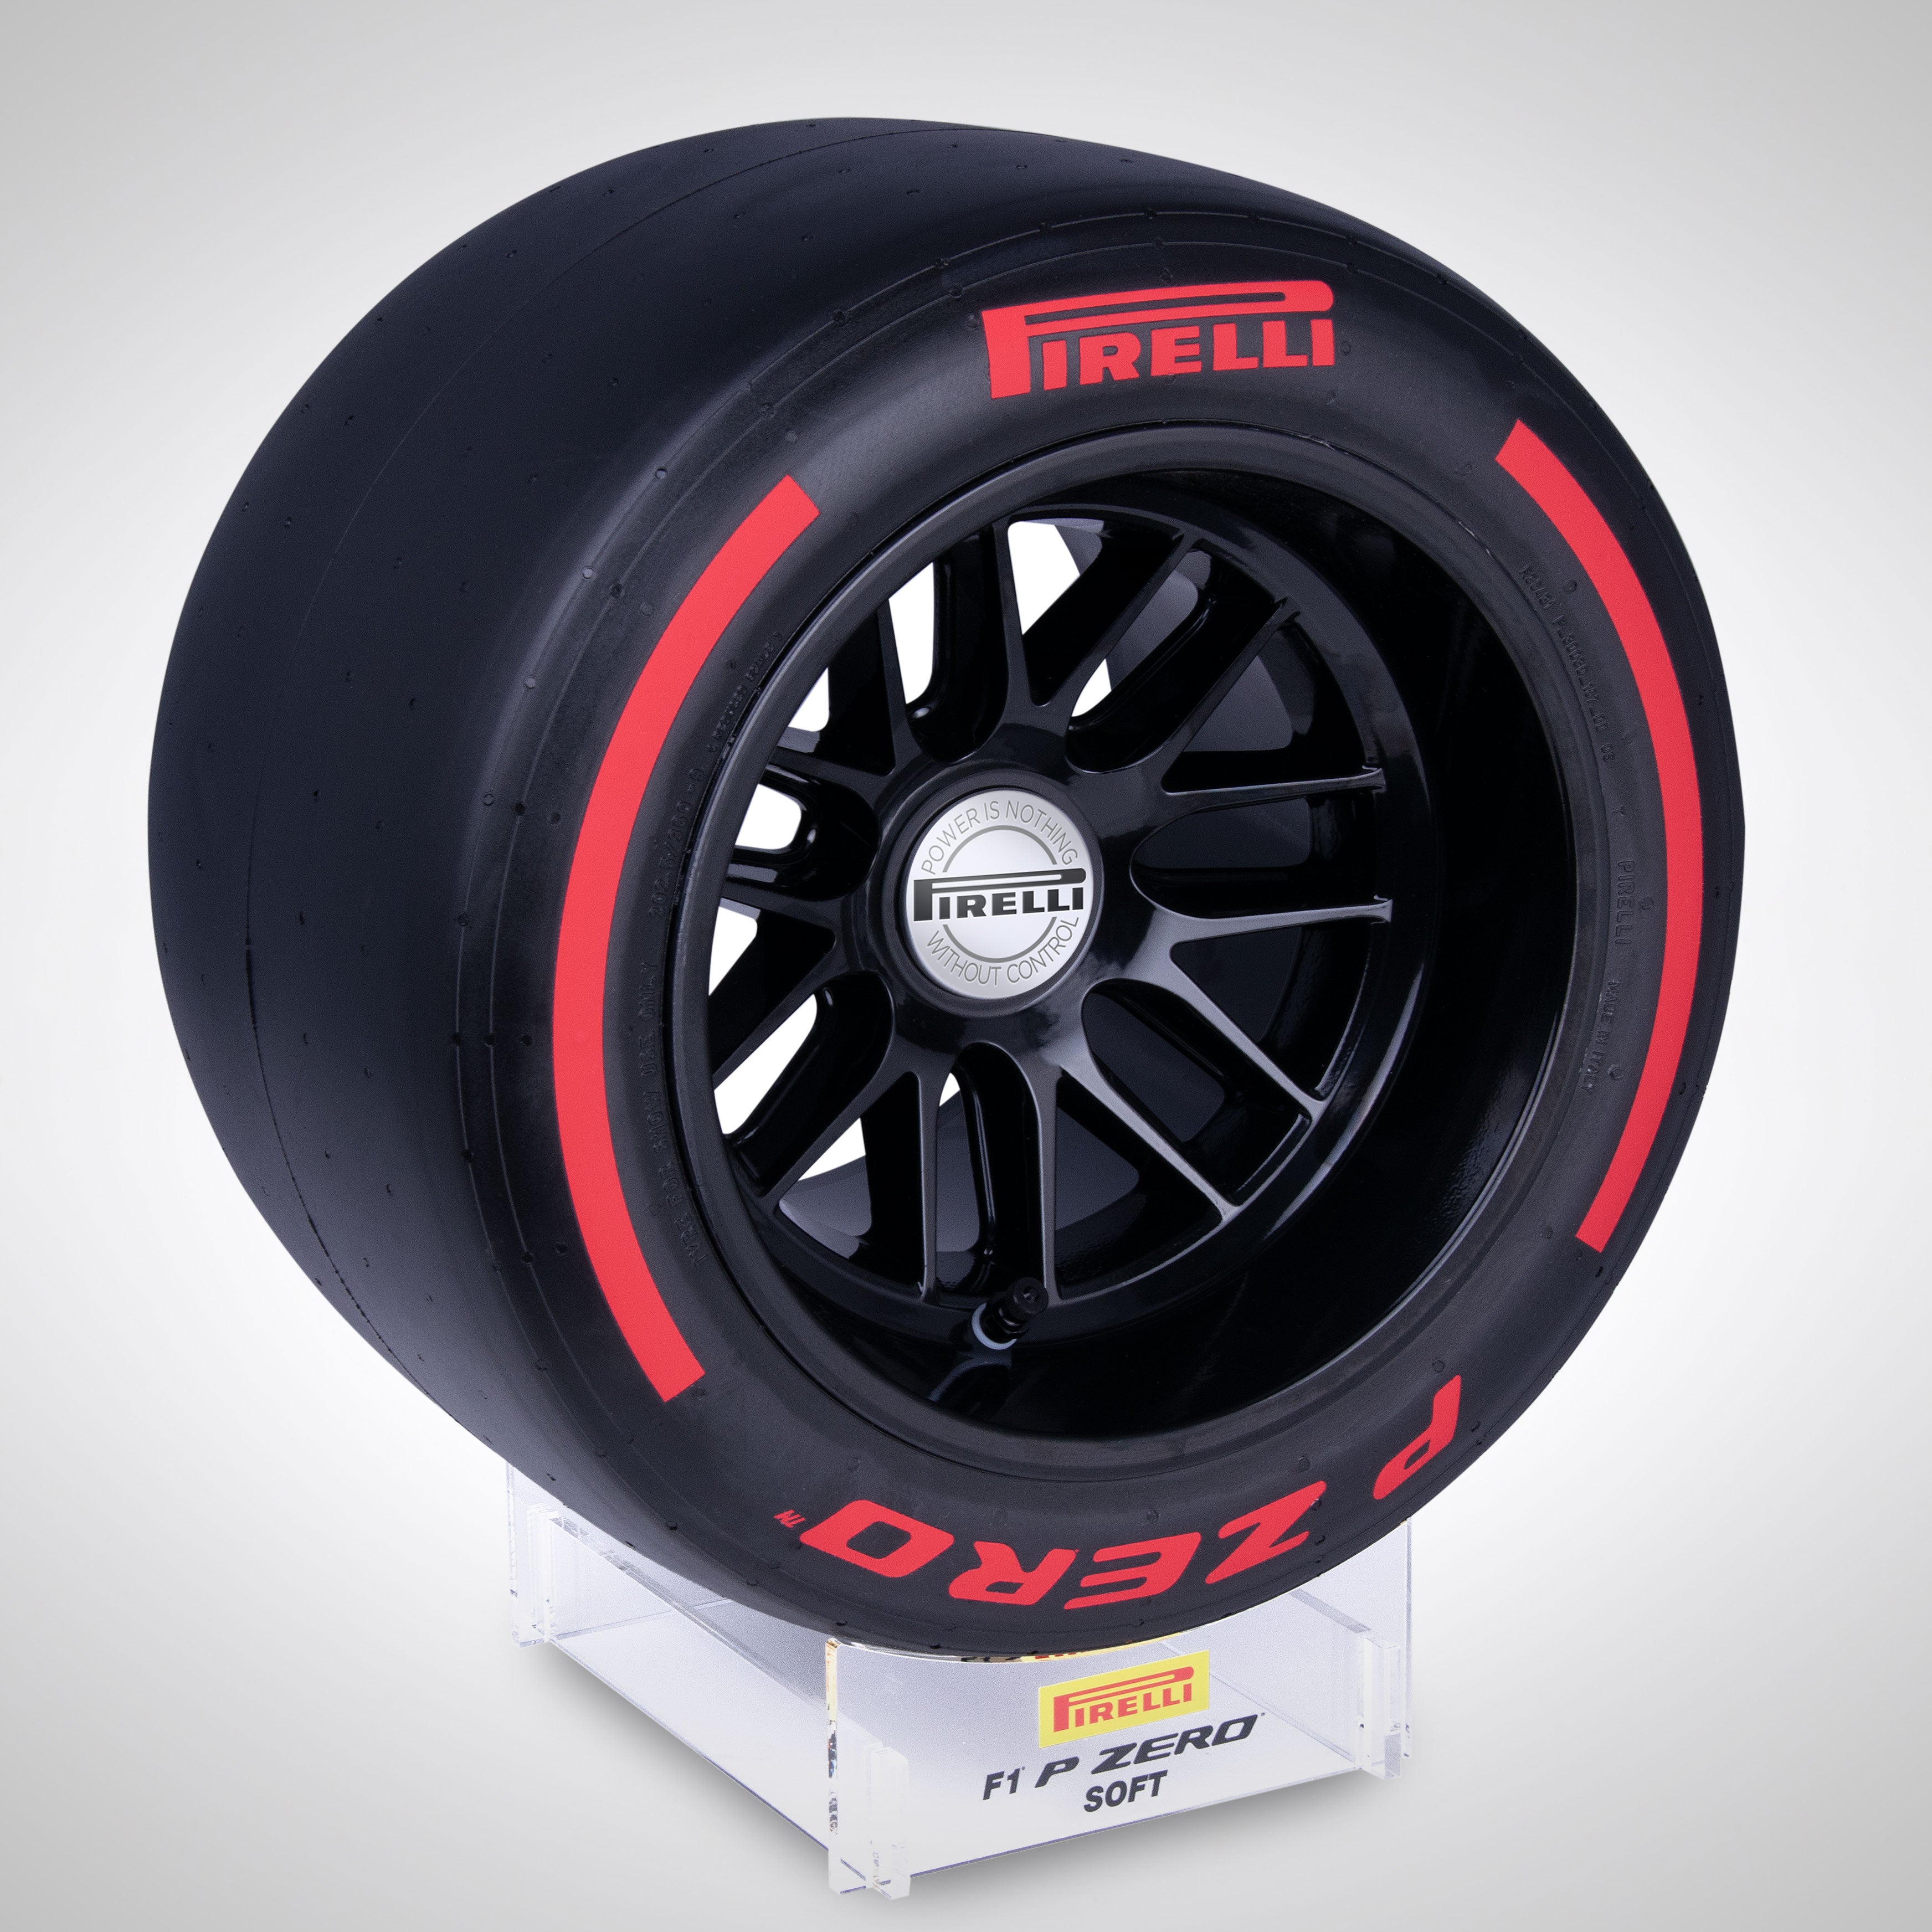 Pirelli Wind Tunnel Tyre - Red Soft Compound